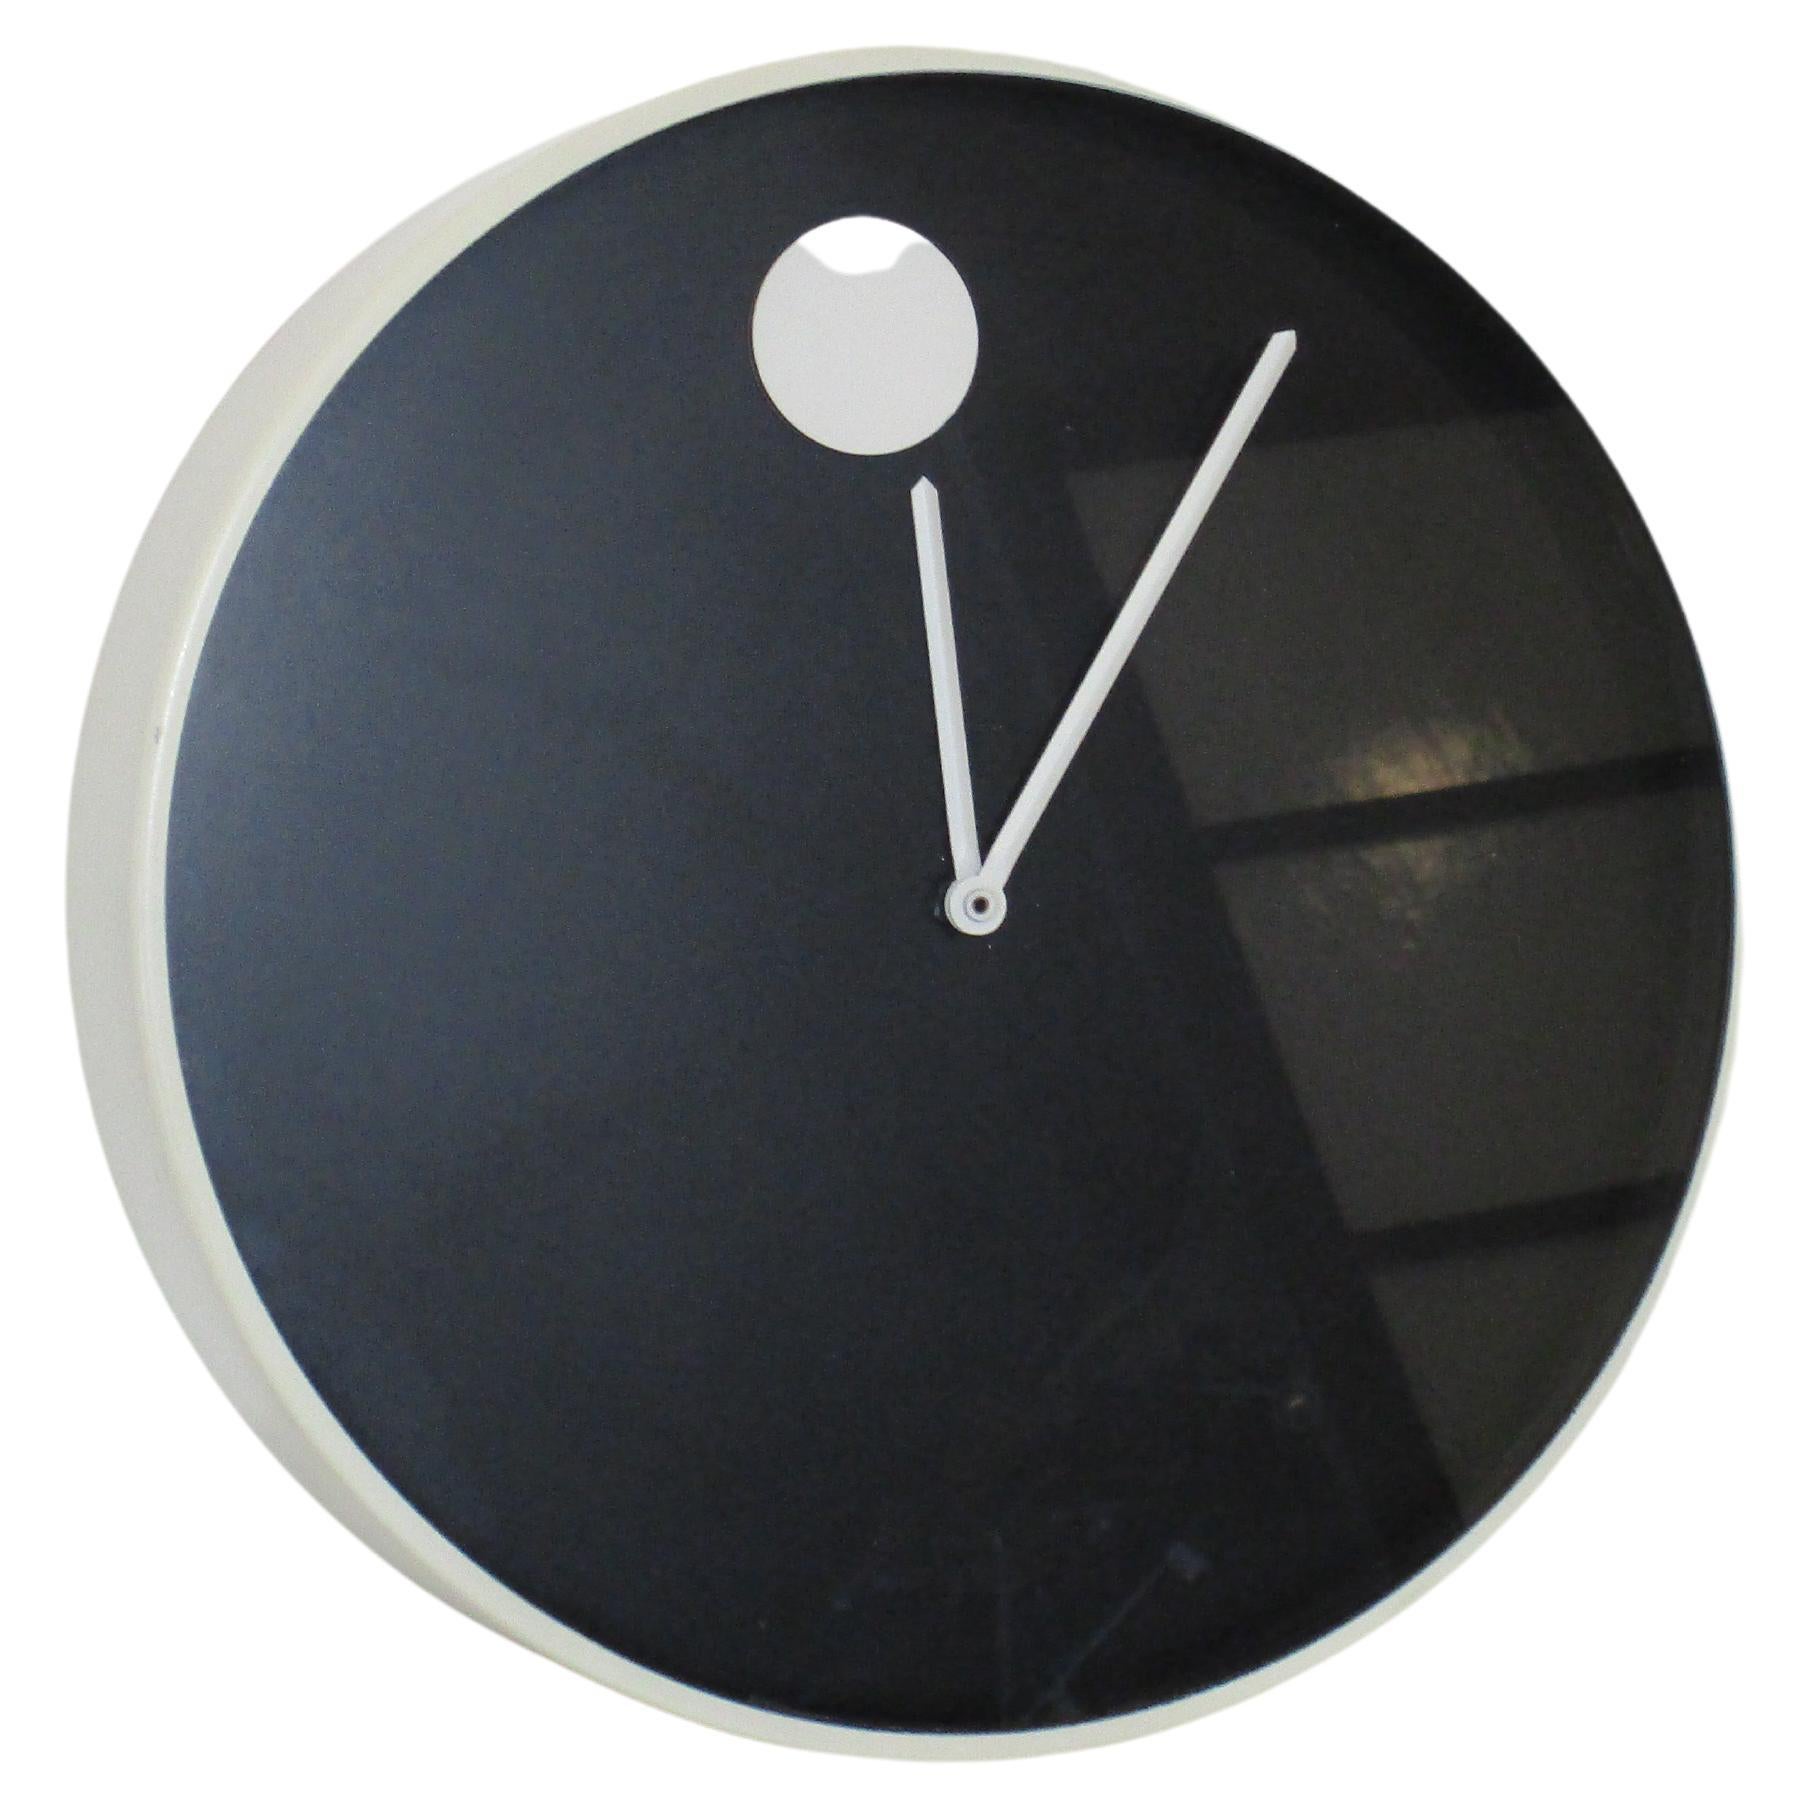 Museum Clock by Horwitt for Howard Miller